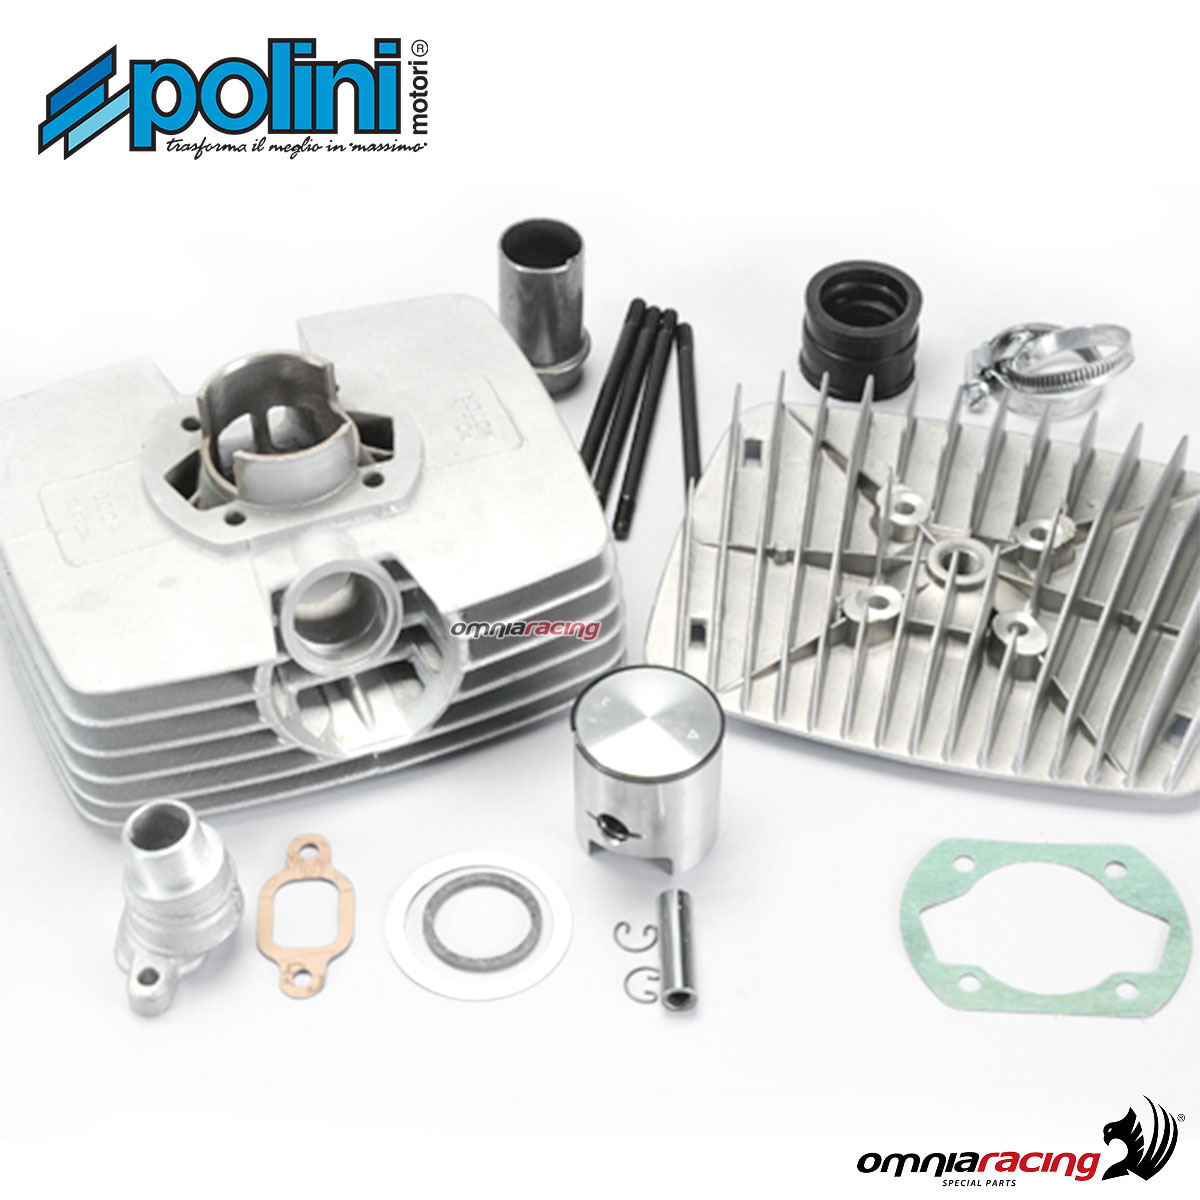 Kit gruppo termico Polini in alluminio 80cc per Minarelli 50 P4/P6 Corsa 42 2T